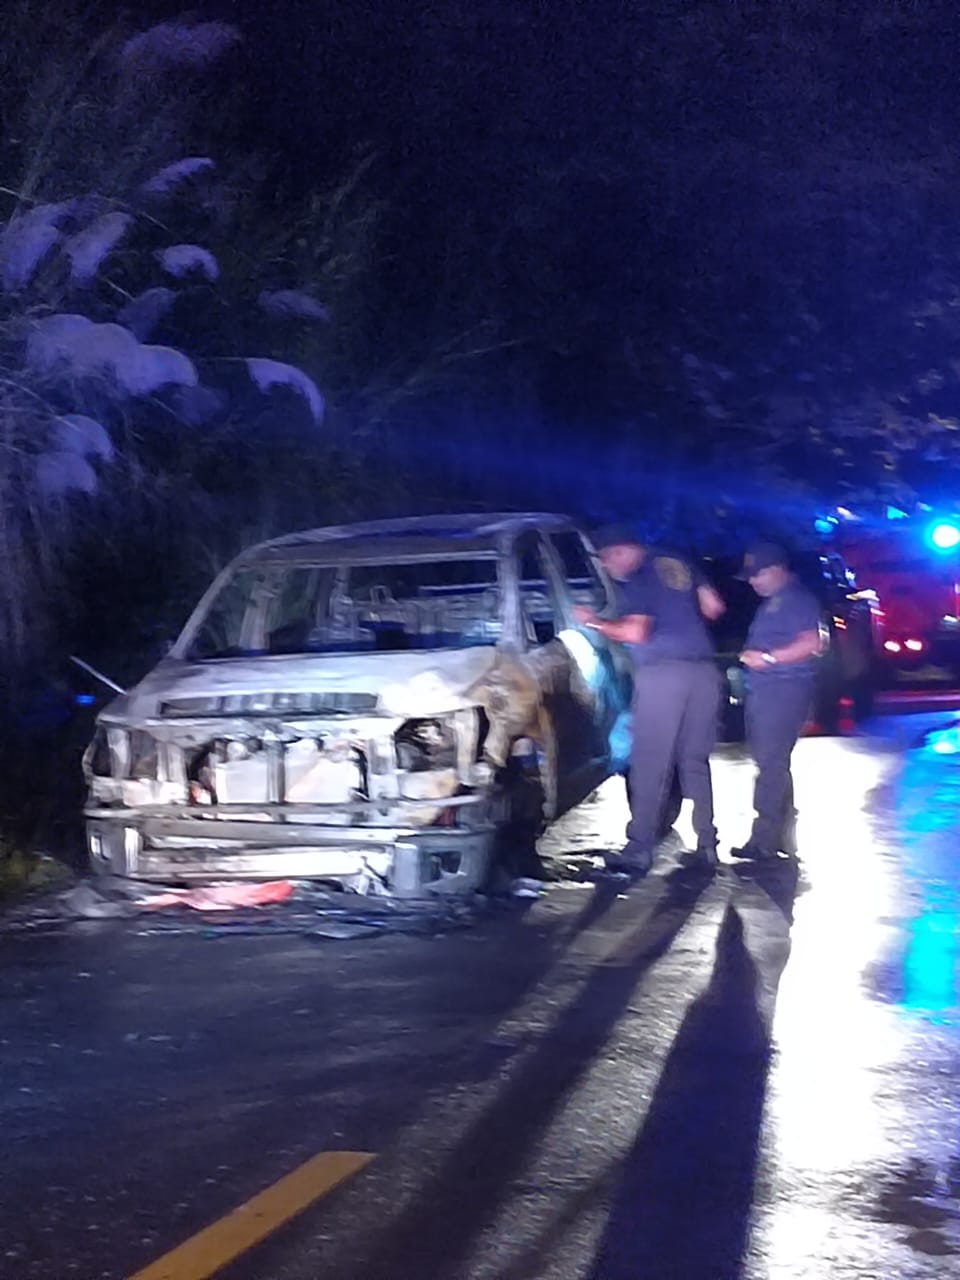 Buscan dar con responsables de hurtar e incendiar un auto en Altos de Tocumen